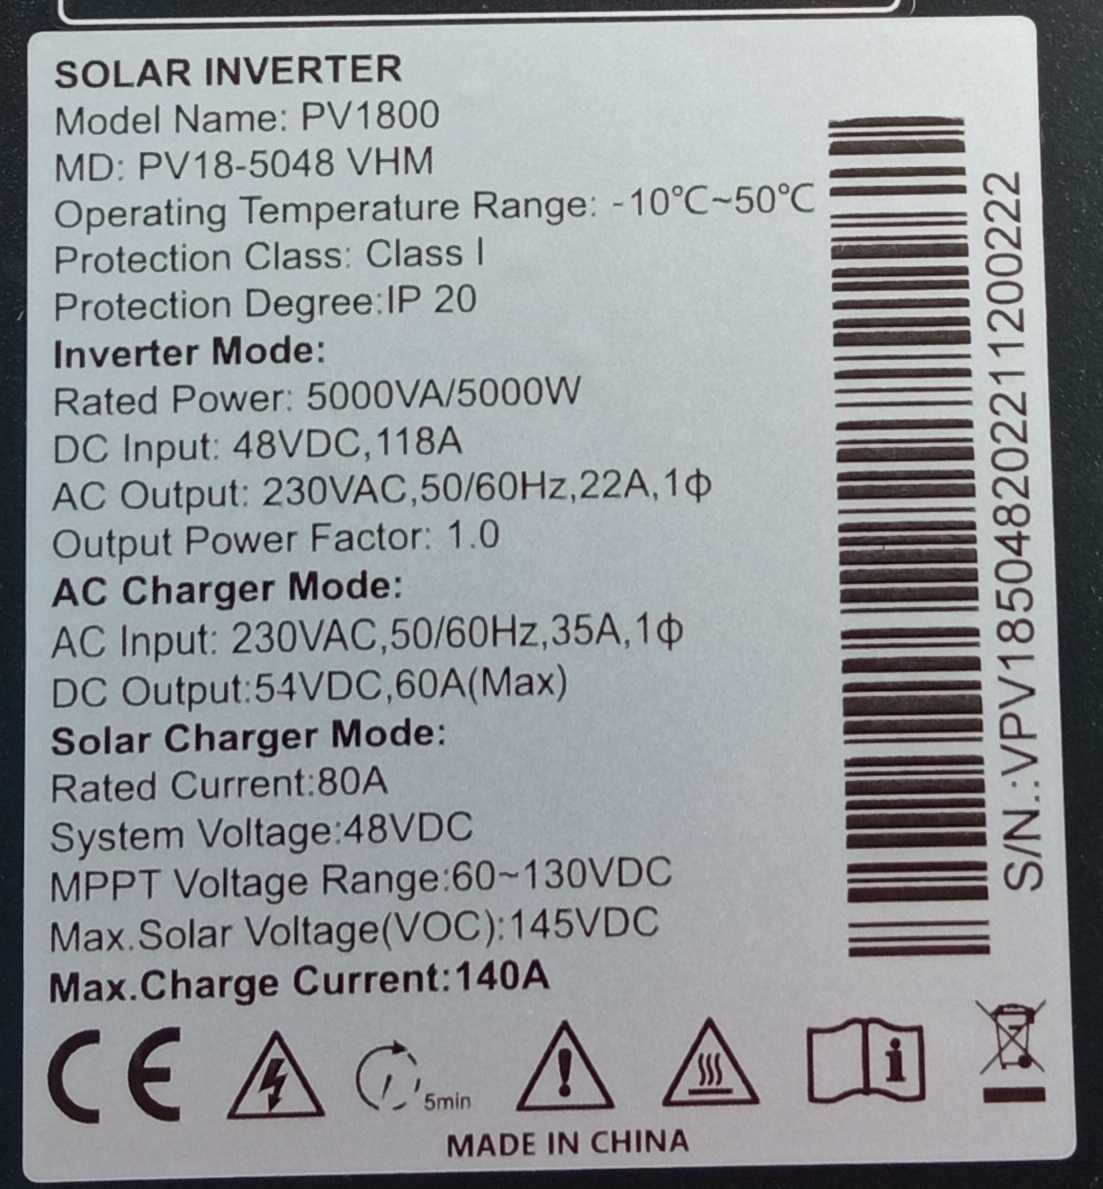 Invertor solar MUST 5kw 48v  Off grid